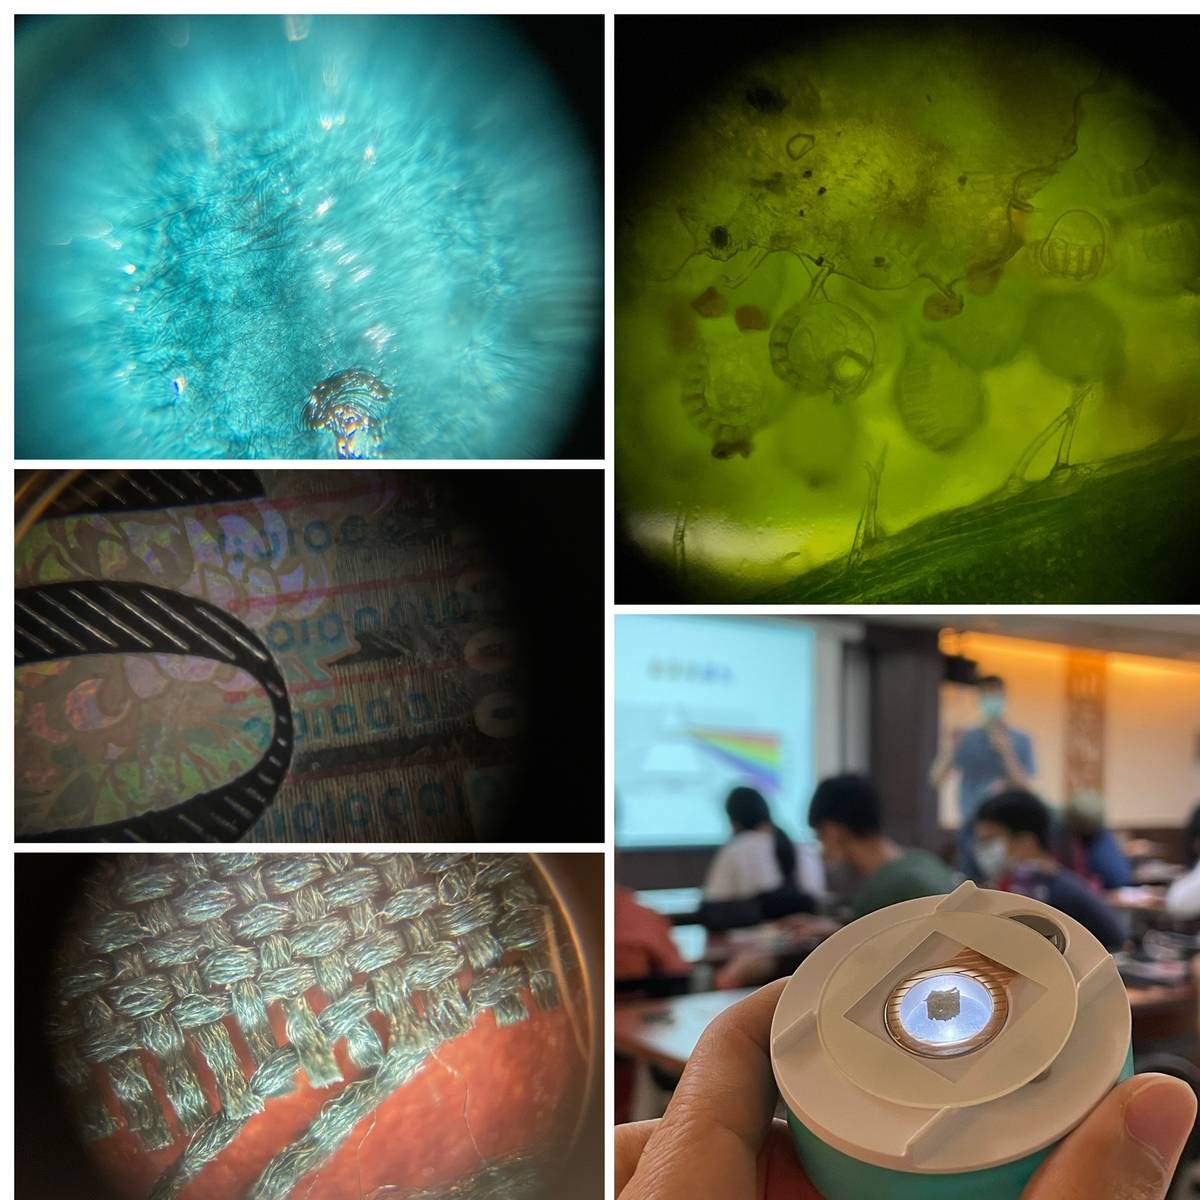 葉長青博士帶領大家使用「行動顯微鏡」，觀察金箔、鈔票、織品與蕨類的孢子囊等樣本